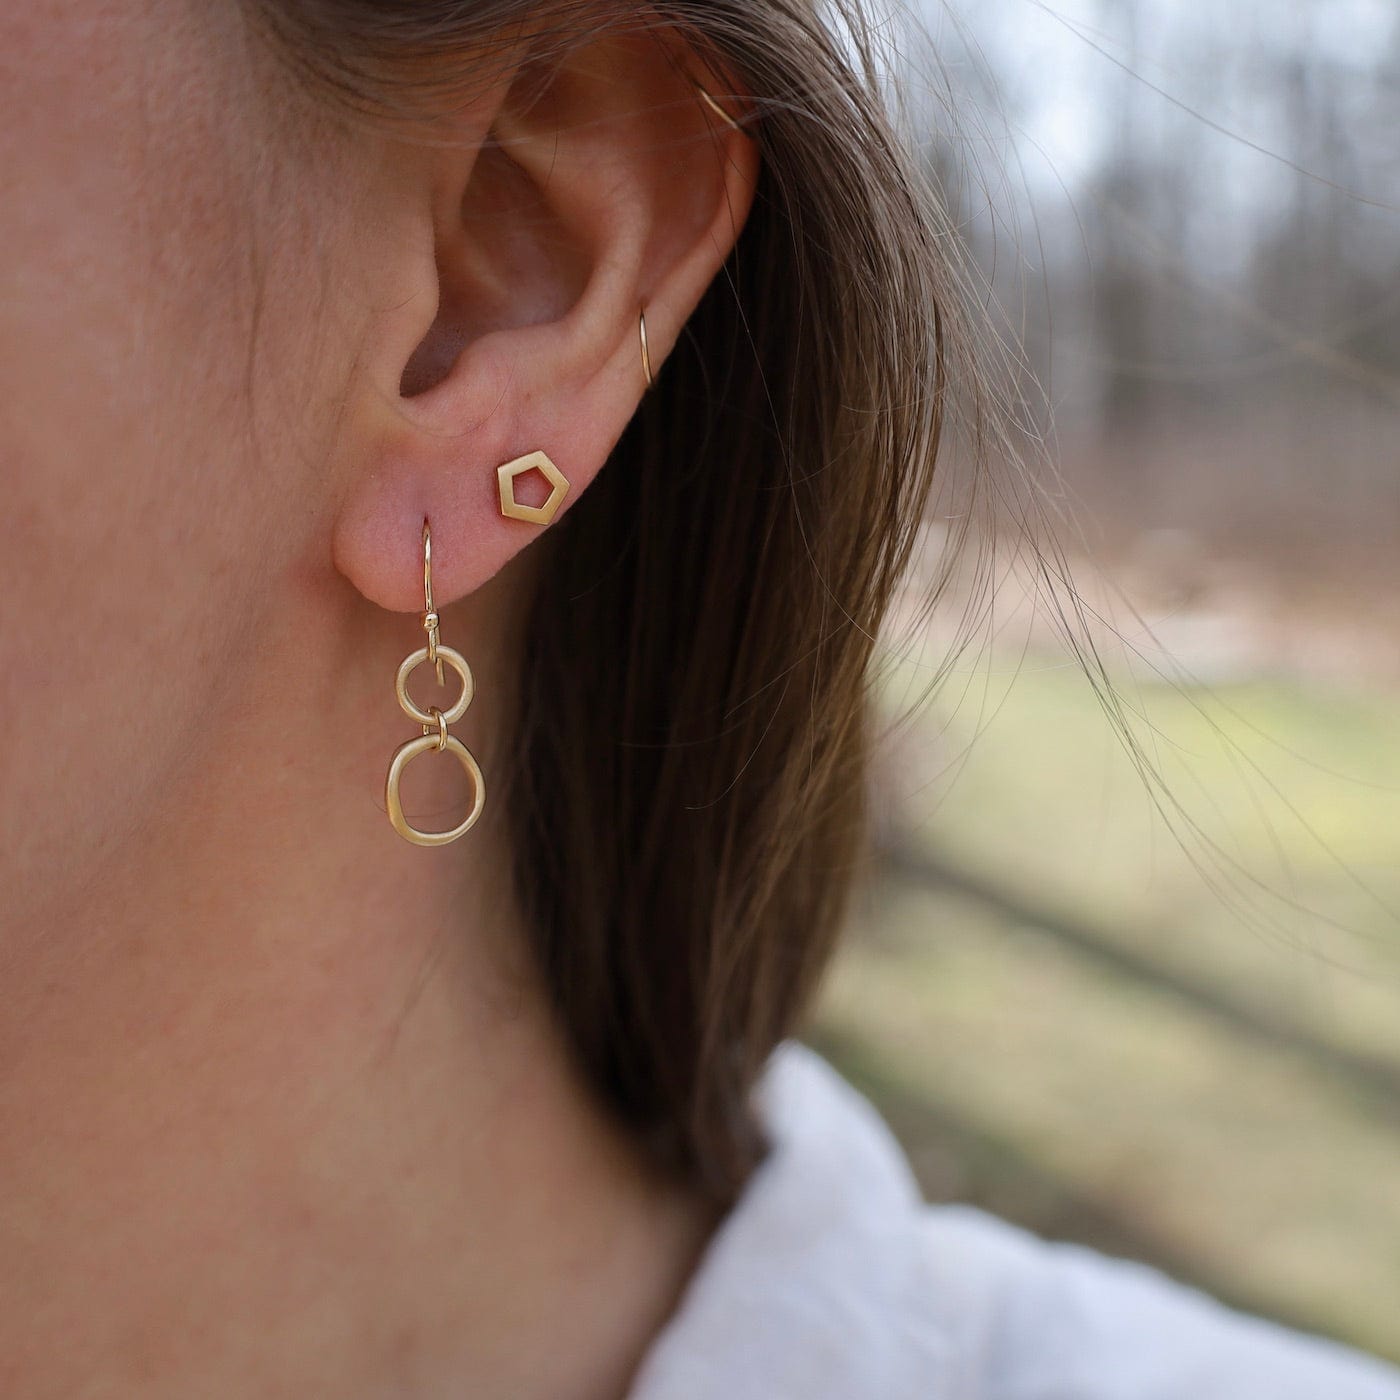 EAR-18K 18k Yellow Gold Pentagonal Stud Earrings